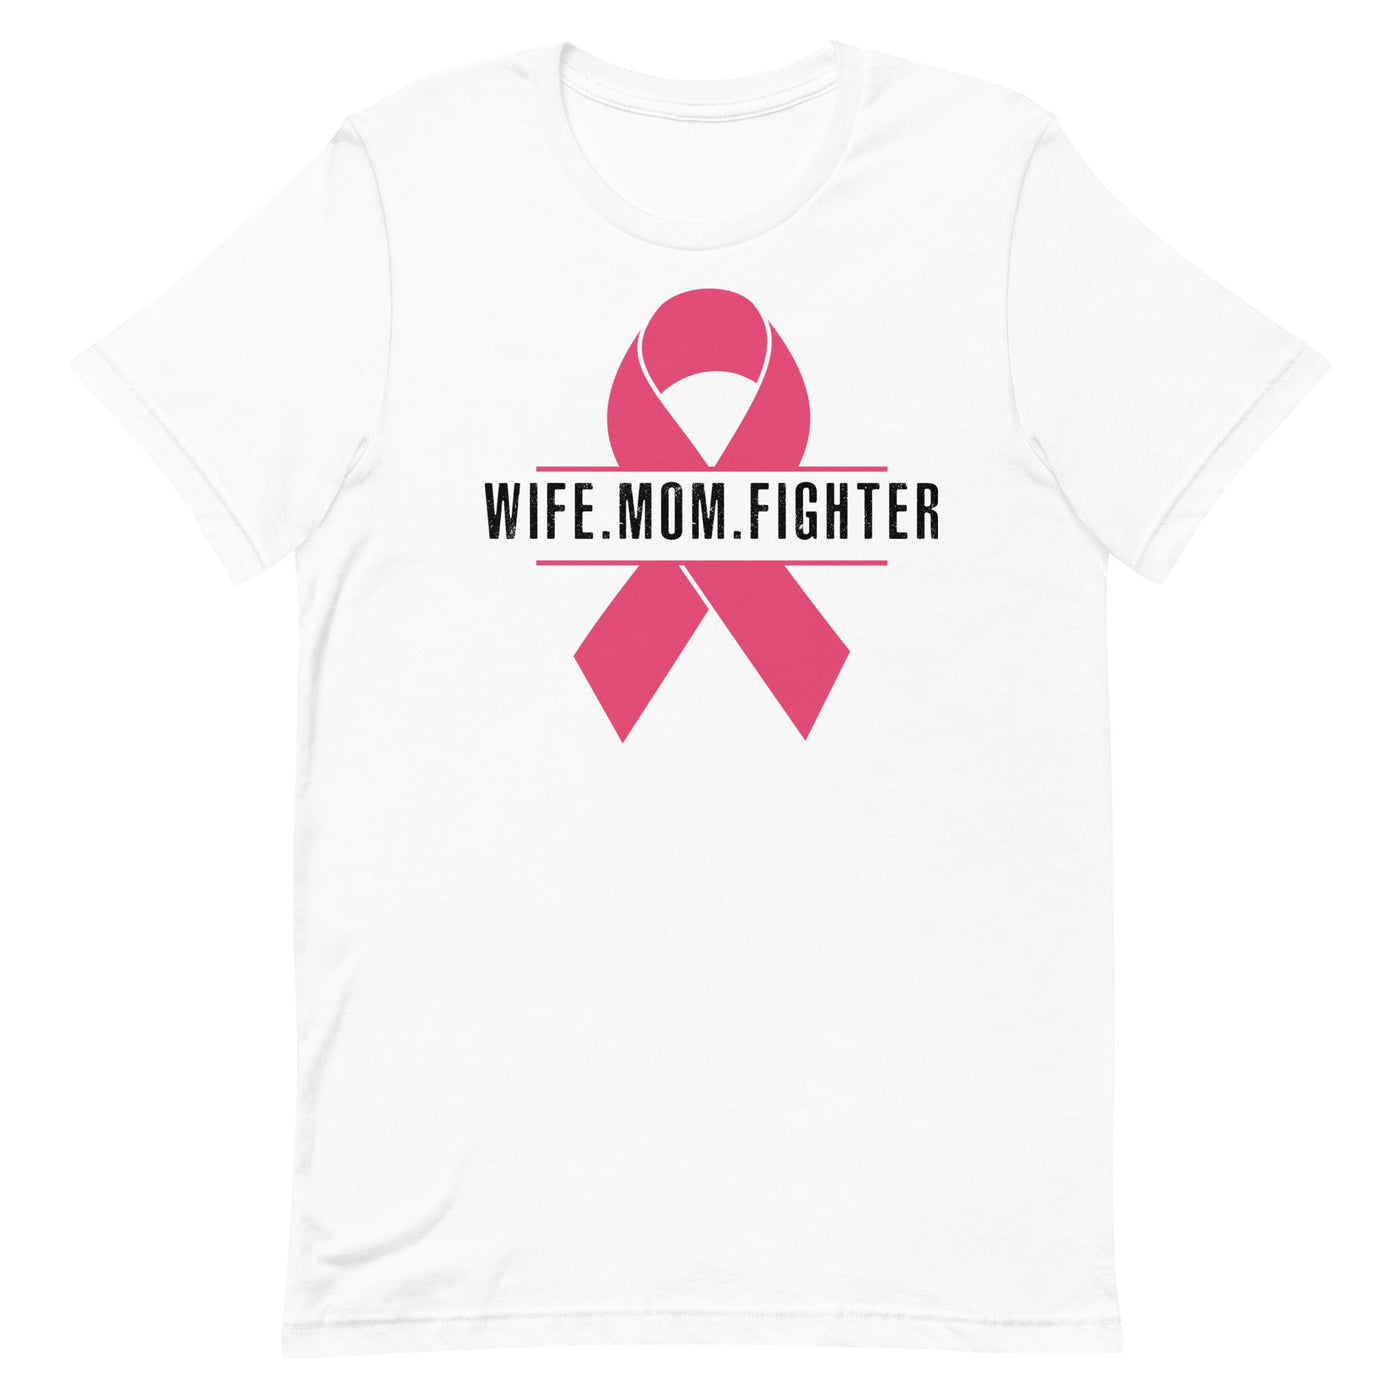 WIFE. MOM. FIGHTER - WOMEN'S T-SHIRT- BLACK FONT White S 